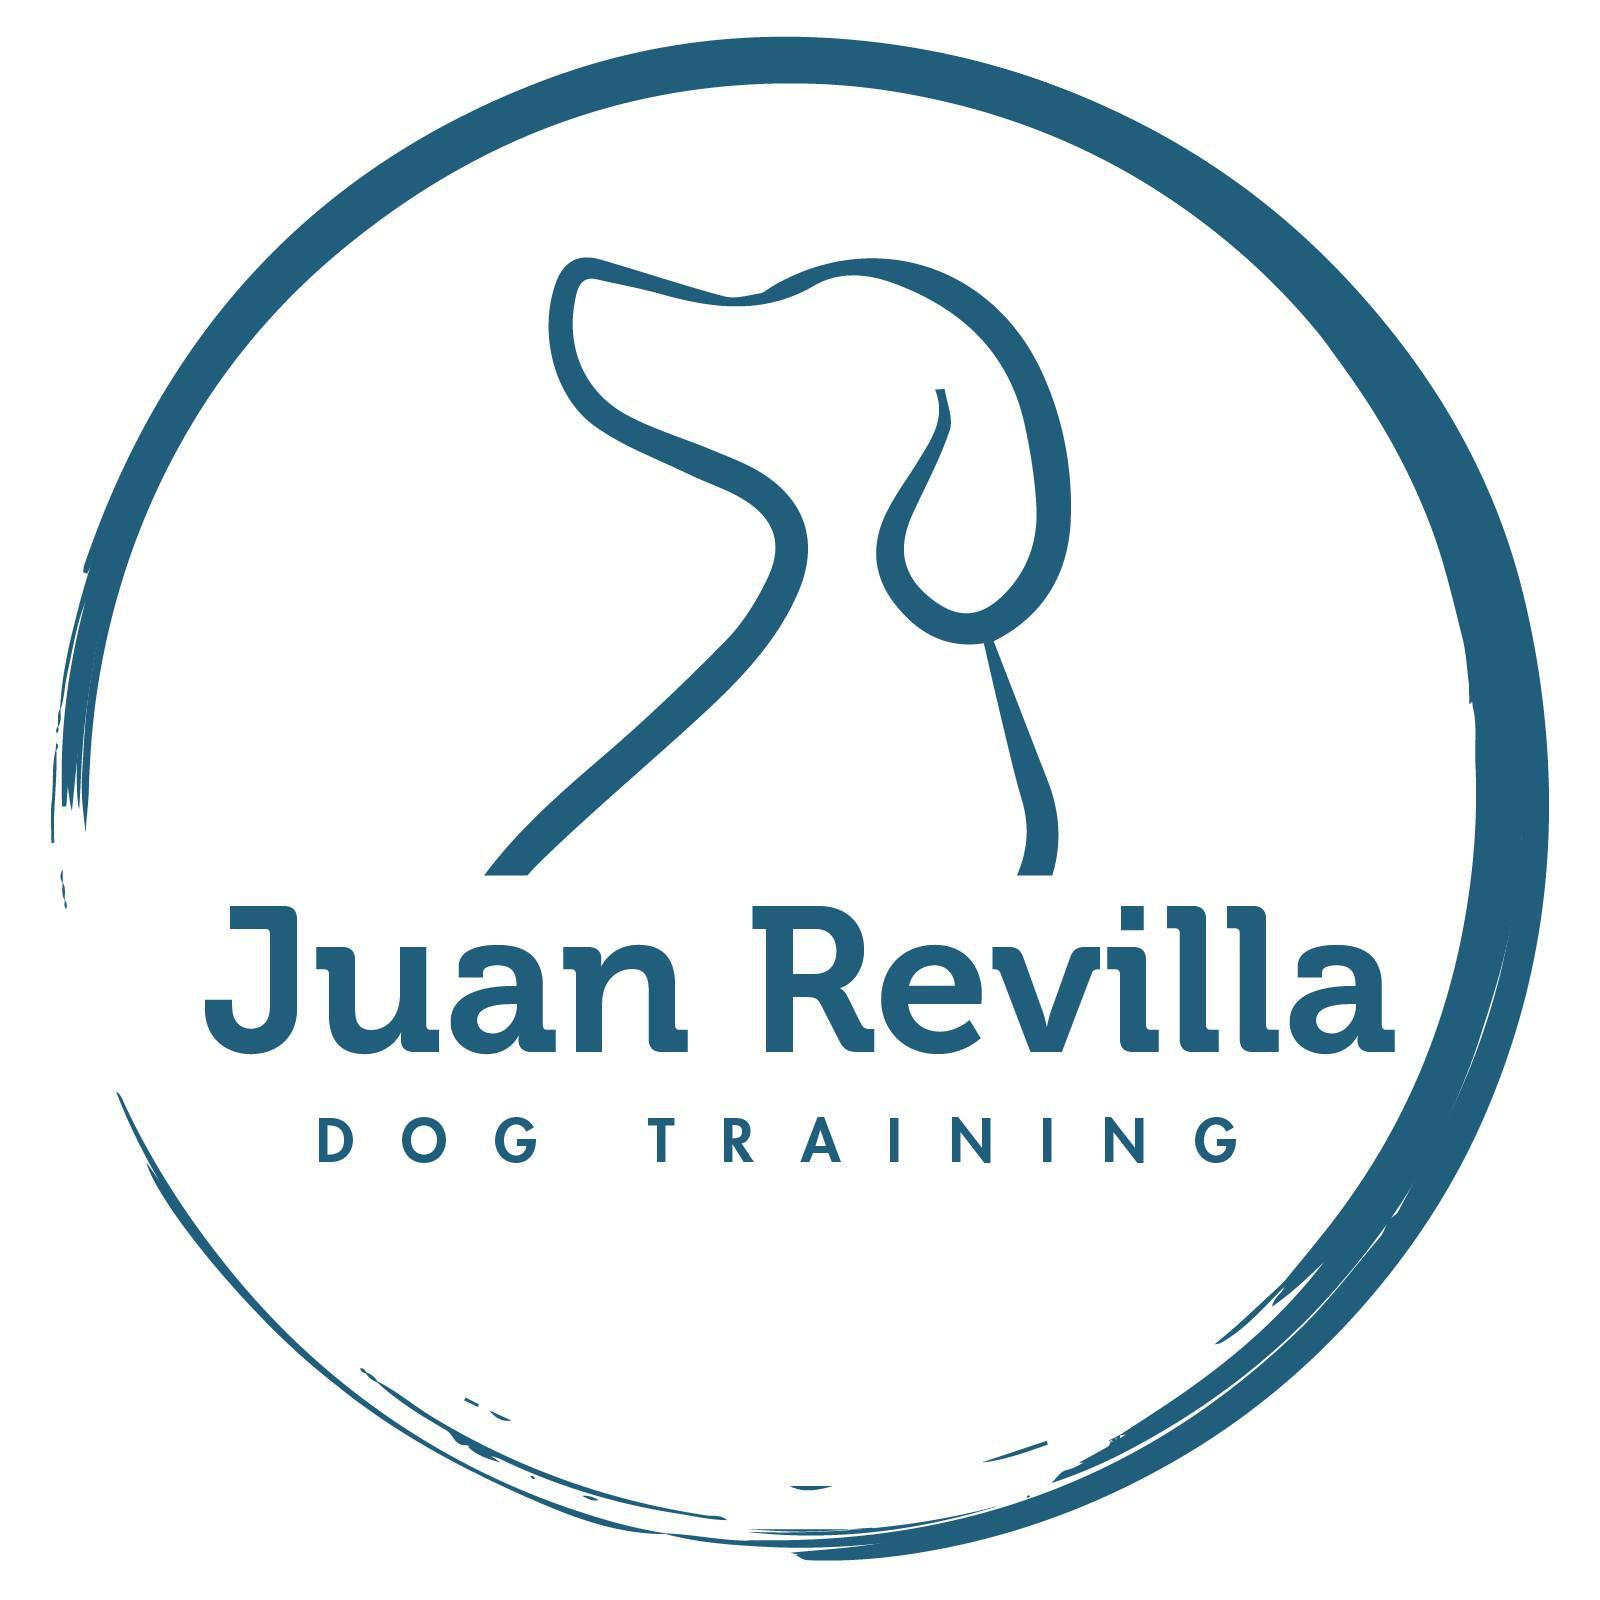 Juan Revilla Dog Training Madrid